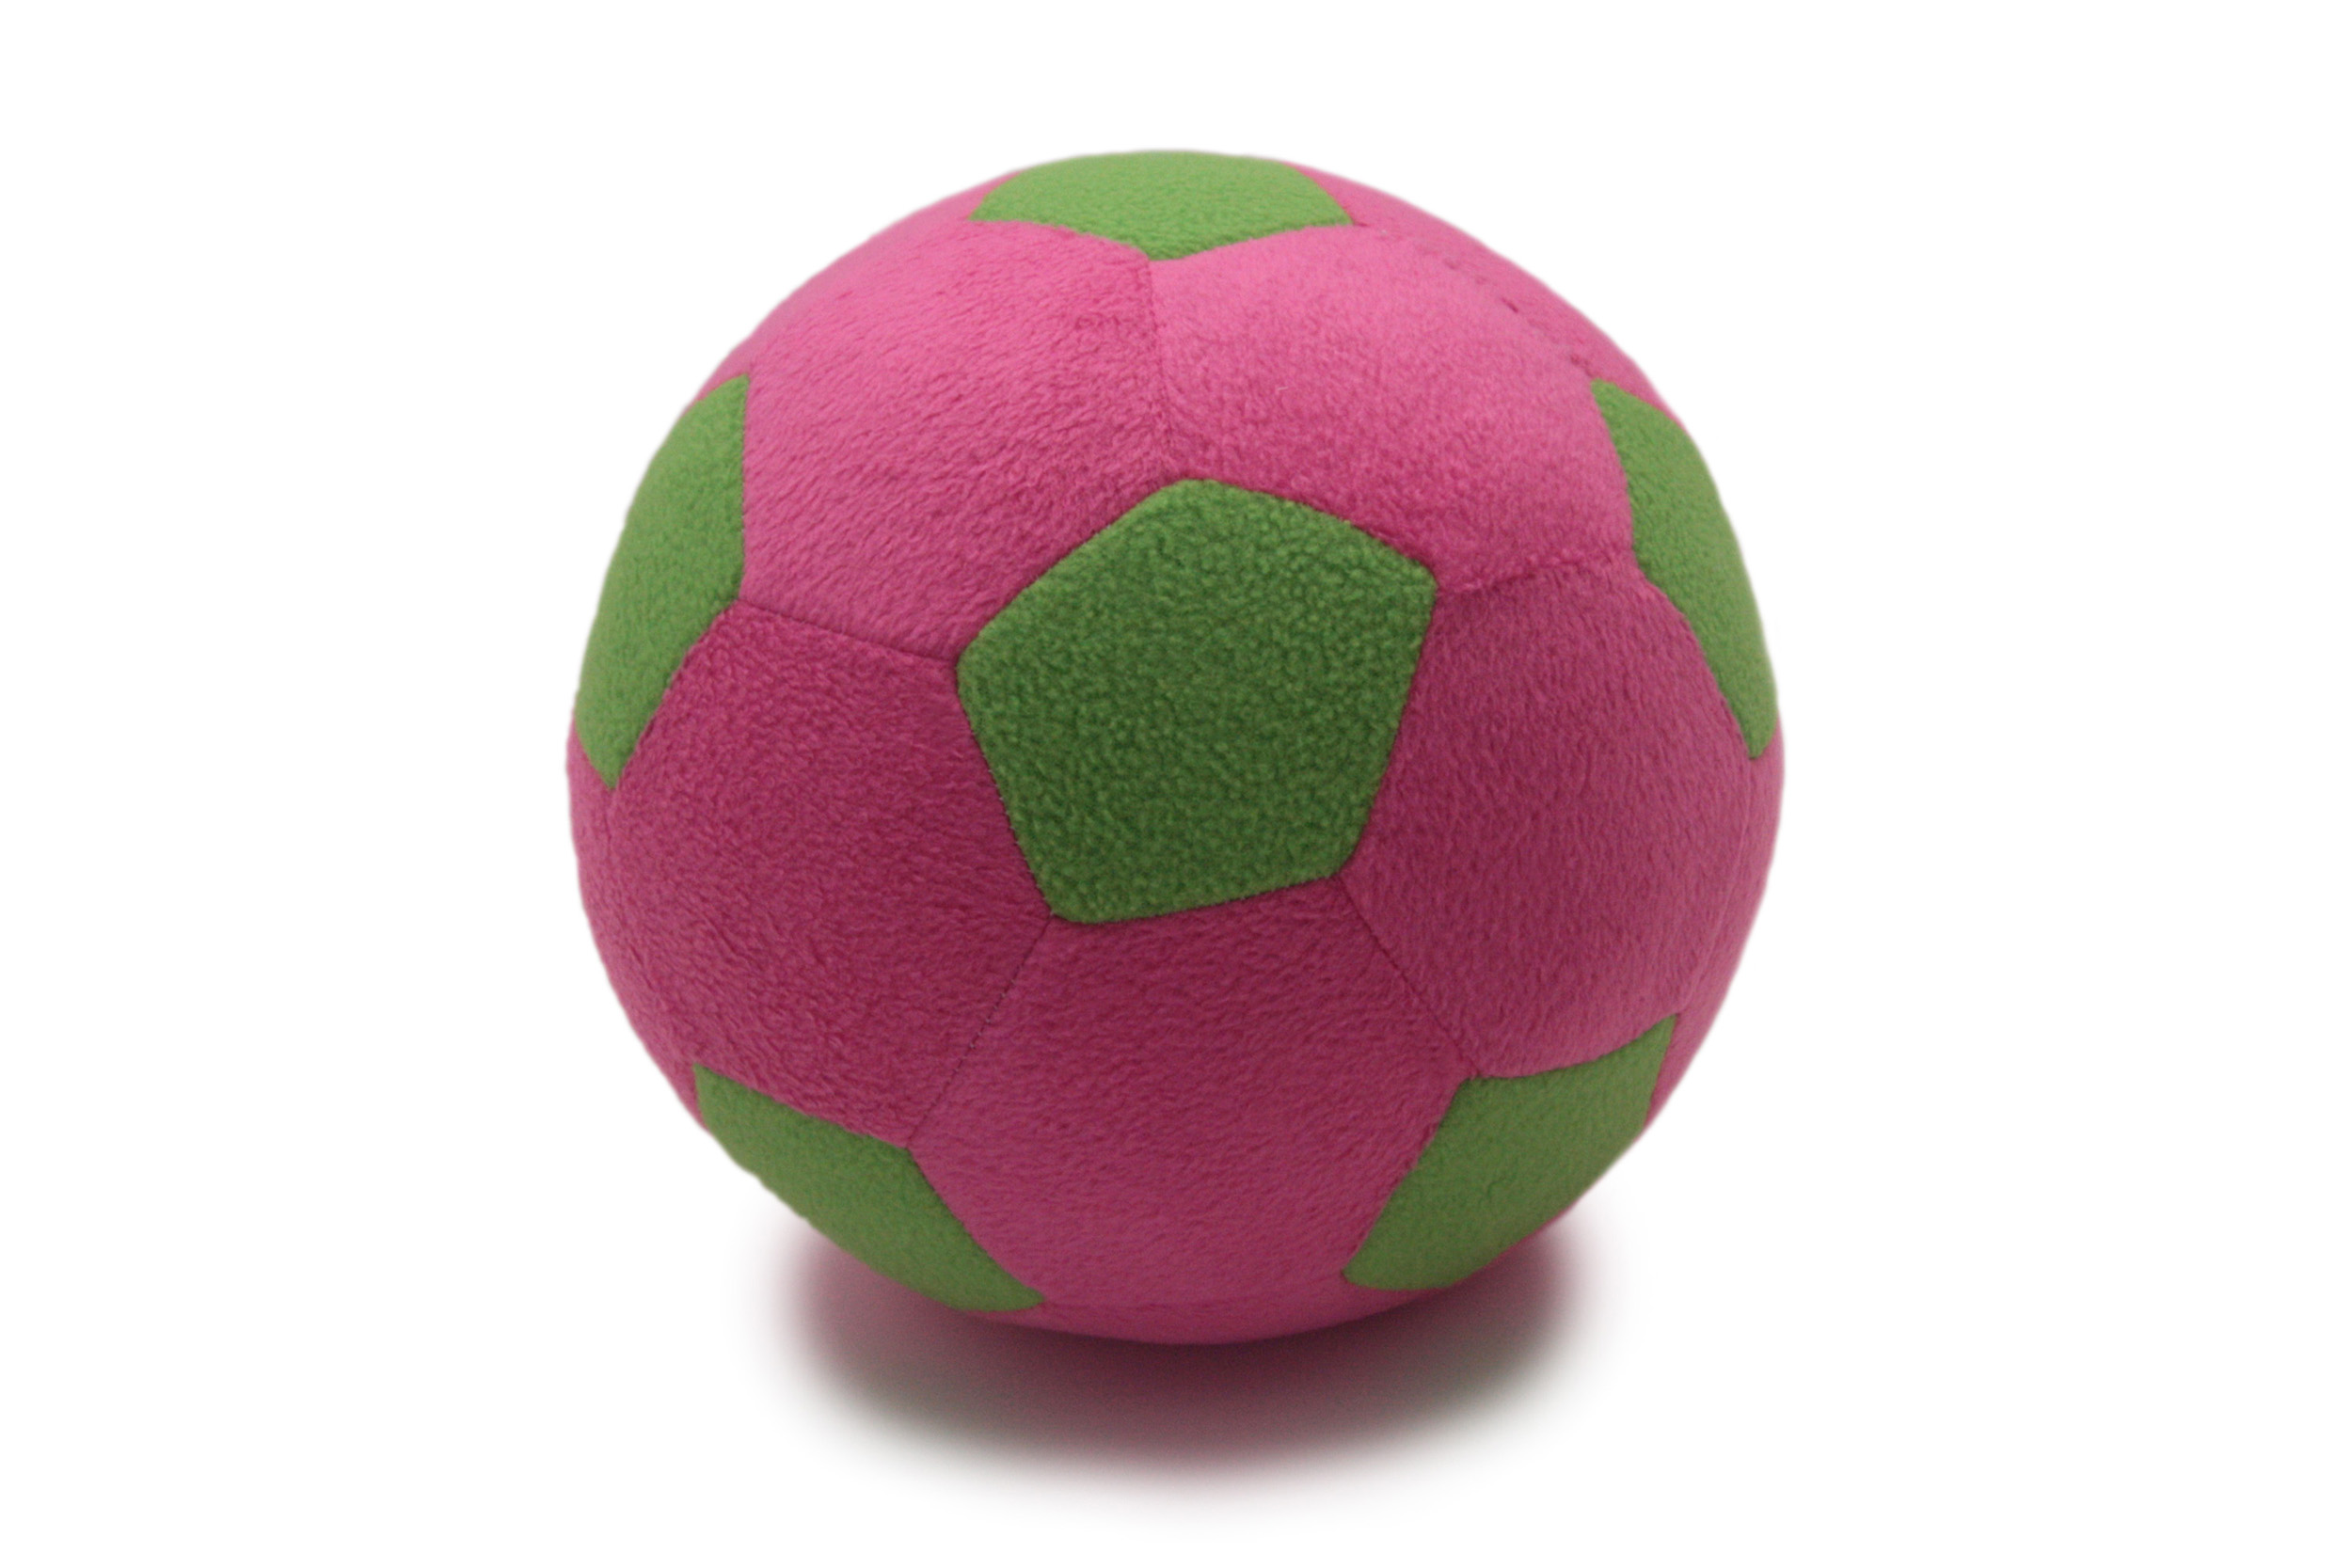 Детский мяч Magic Bear Toys F-100/PLG Мяч мягкий цвет розовый,светло-зеленый 23 см детский мяч magic bear toys f 100 wlg мяч мягкий белый светло зеленый 23 см